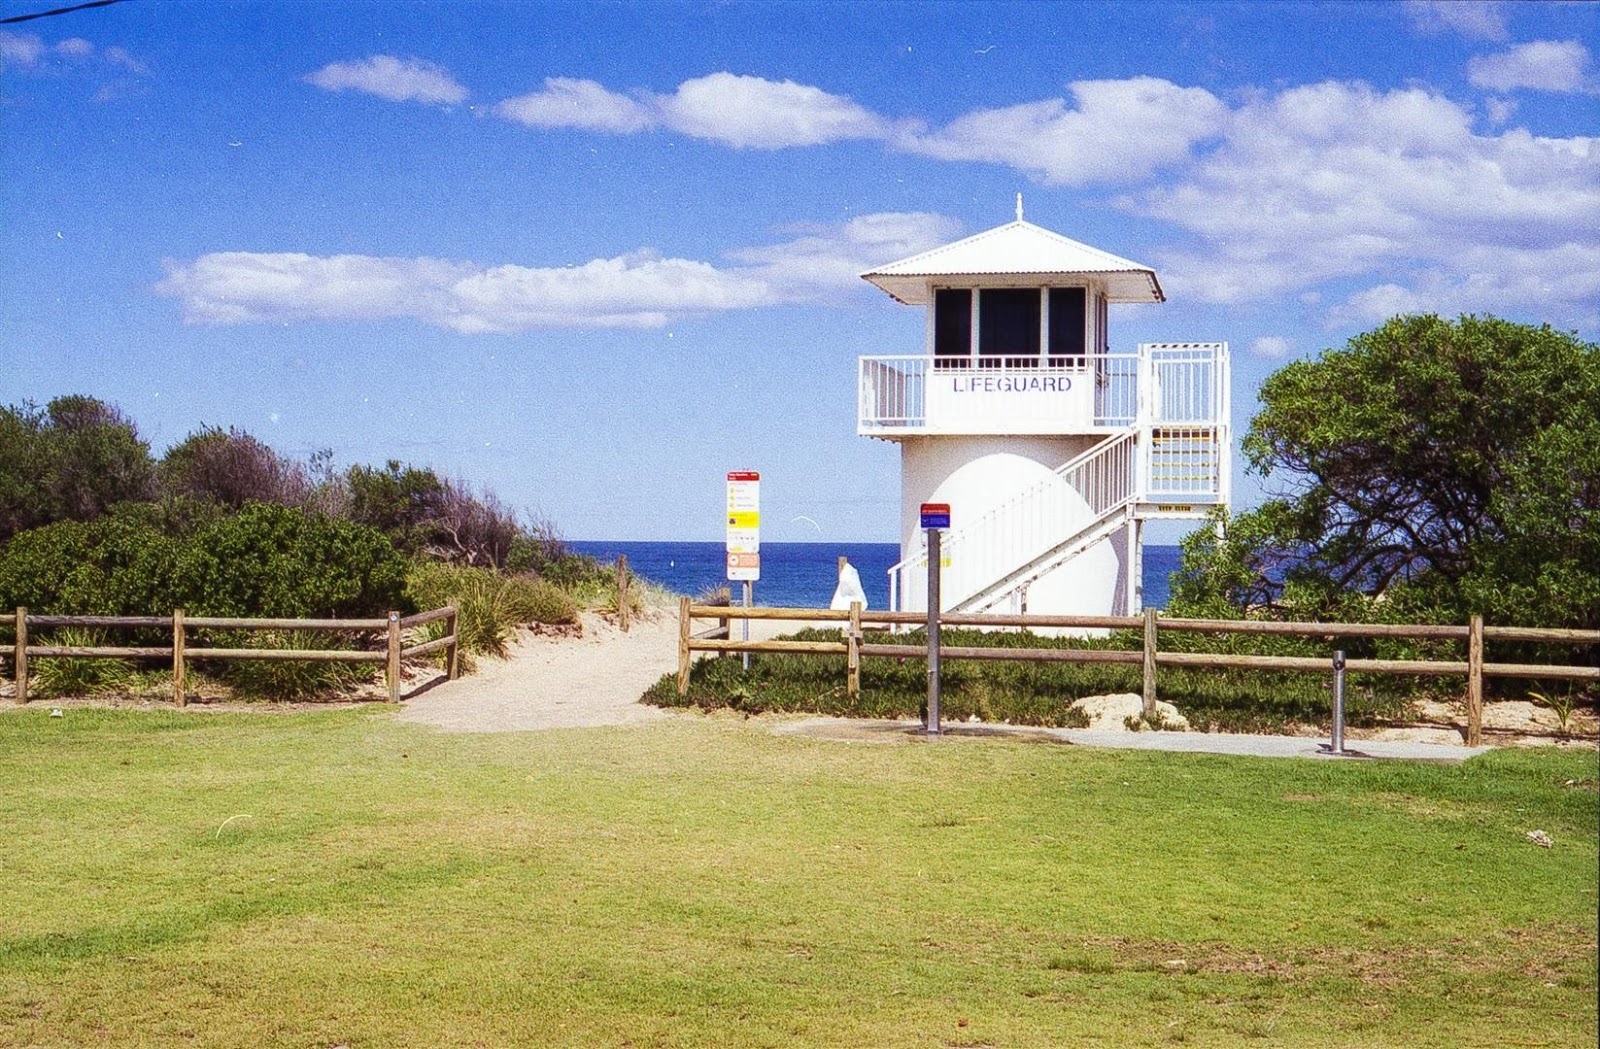 Foto af Fairy Meadow Beach - populært sted blandt afslapningskendere